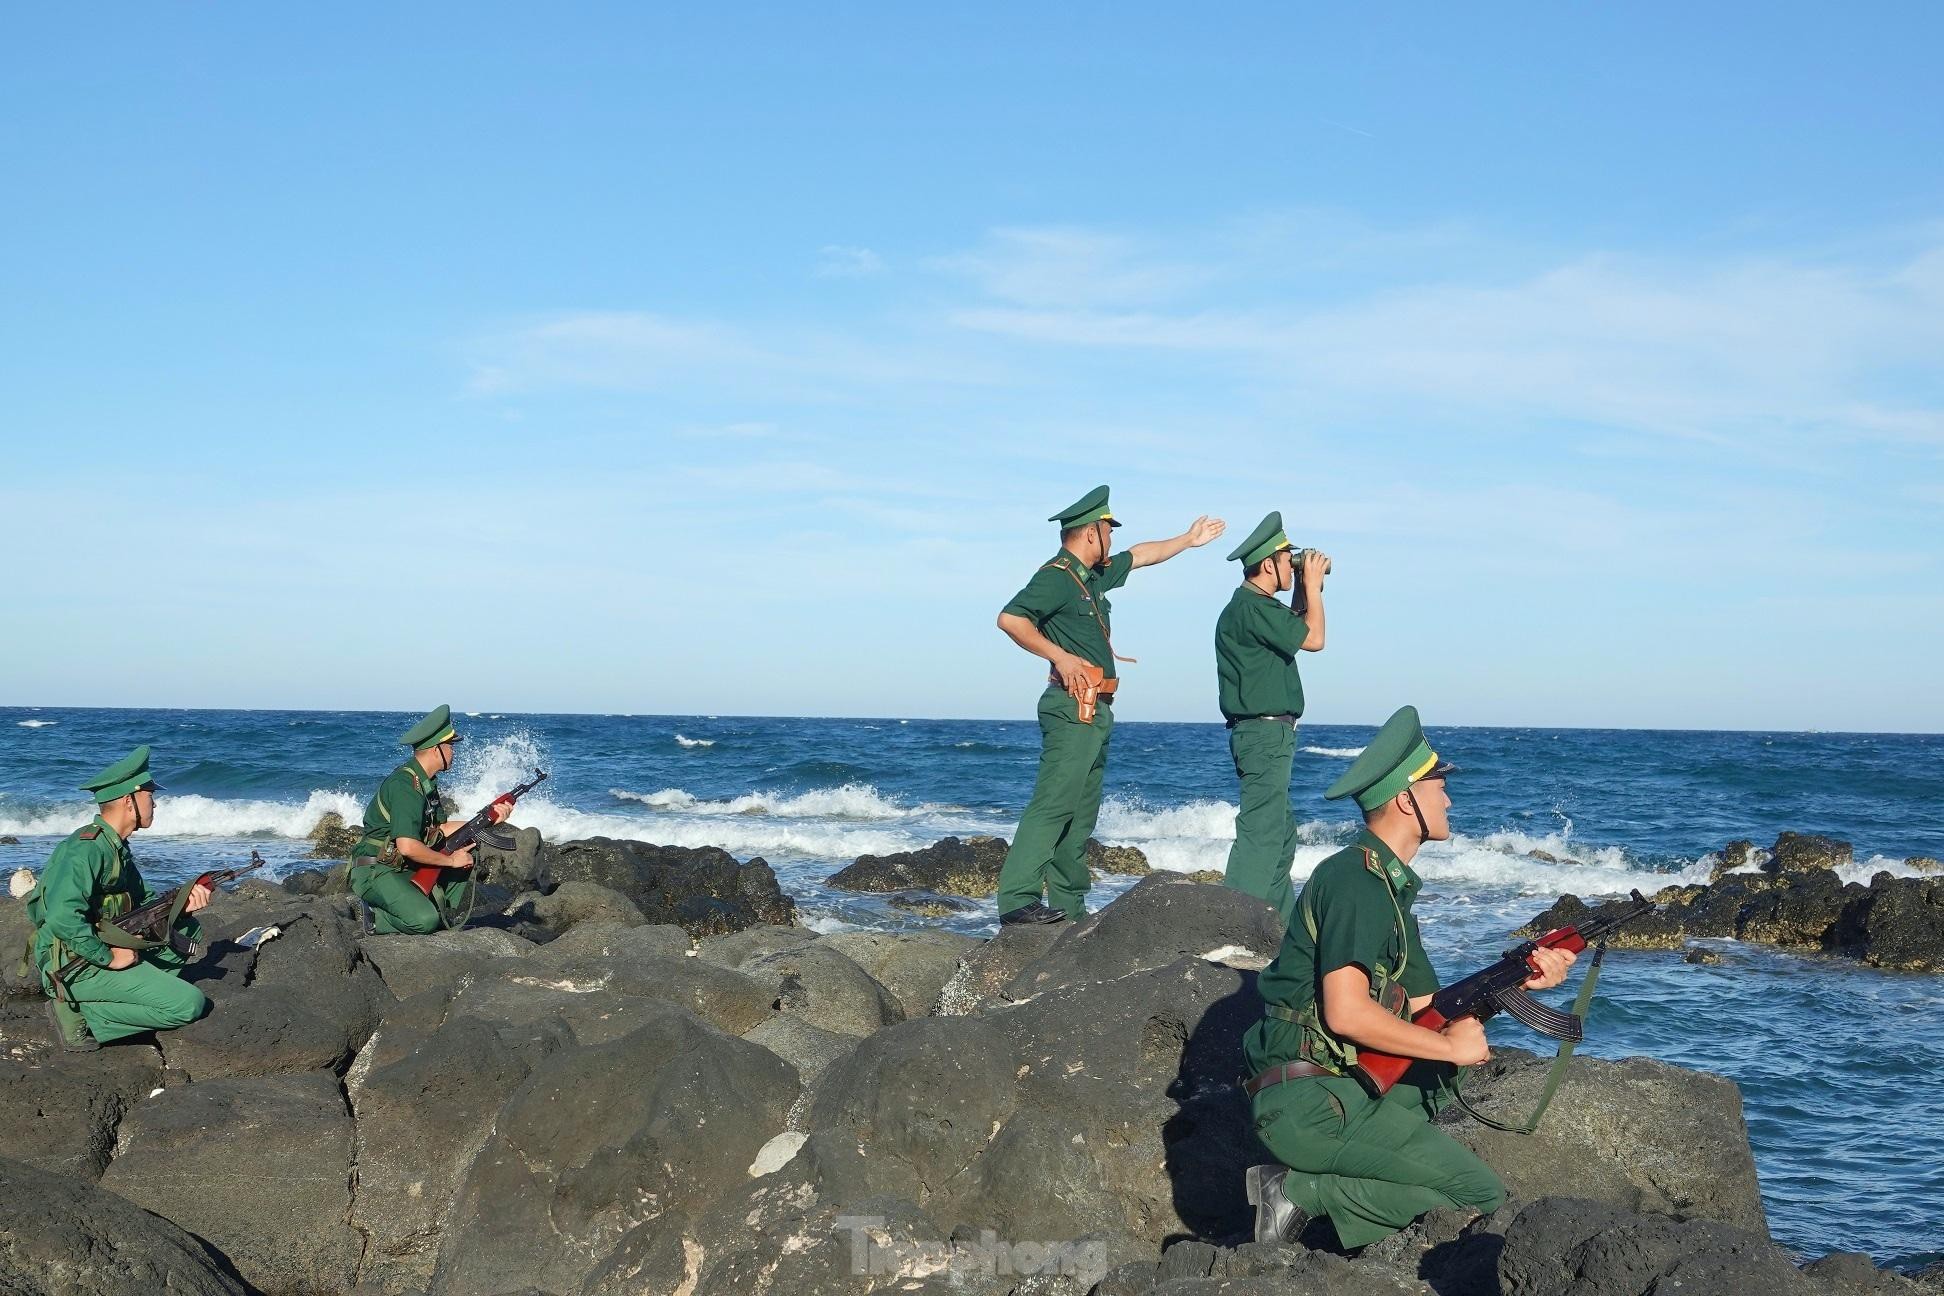 BĐBP Quảng Trị tuần tra bảo vệ chủ quyền trên đảo Cồn Cỏ. Ảnh: Nguyễn Minh